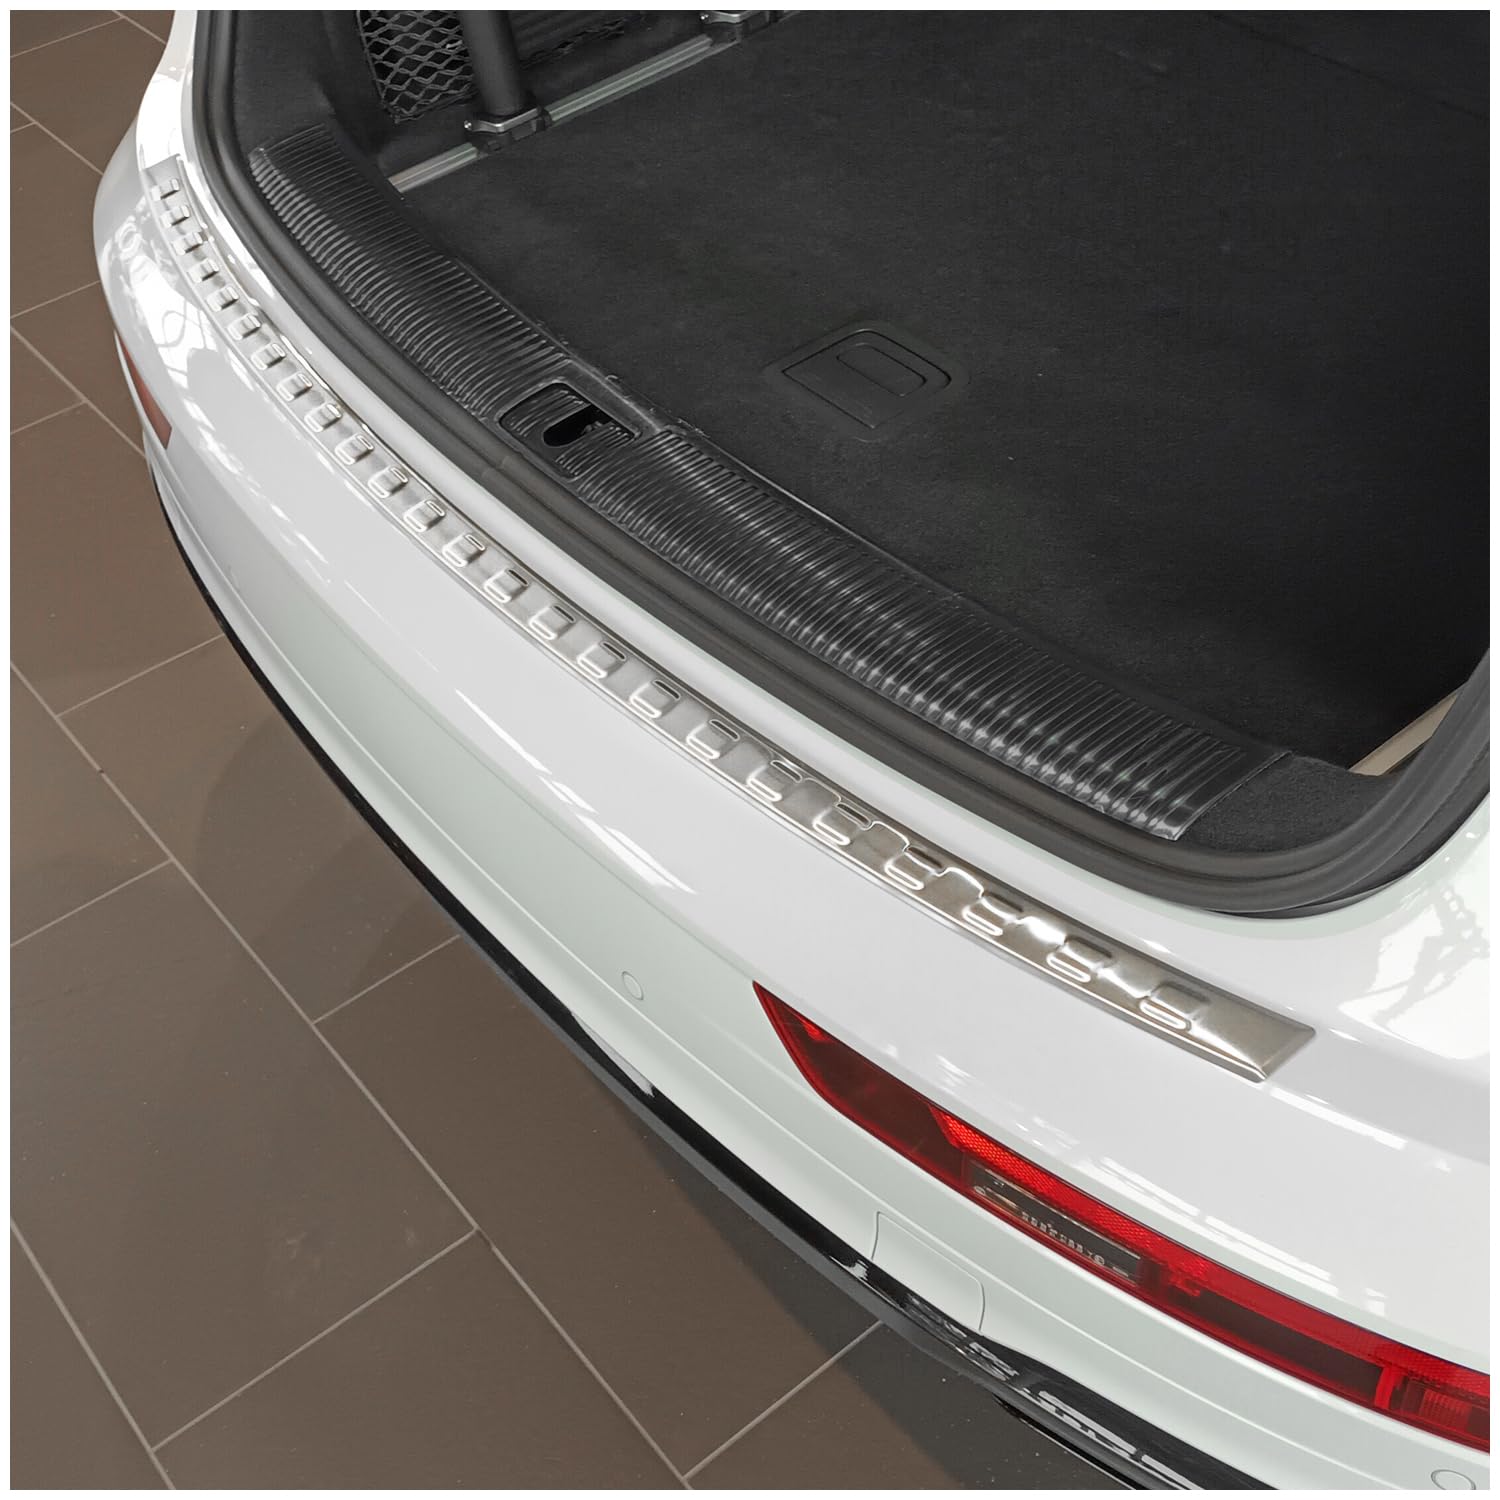 teileplus24 L747 Ladekantenschutz V2A Edelstahl kompatibel mit Audi Q5/ SQ5 2 FY 2021- Abkantung, Farbe:Silber gebürstet von teileplus24